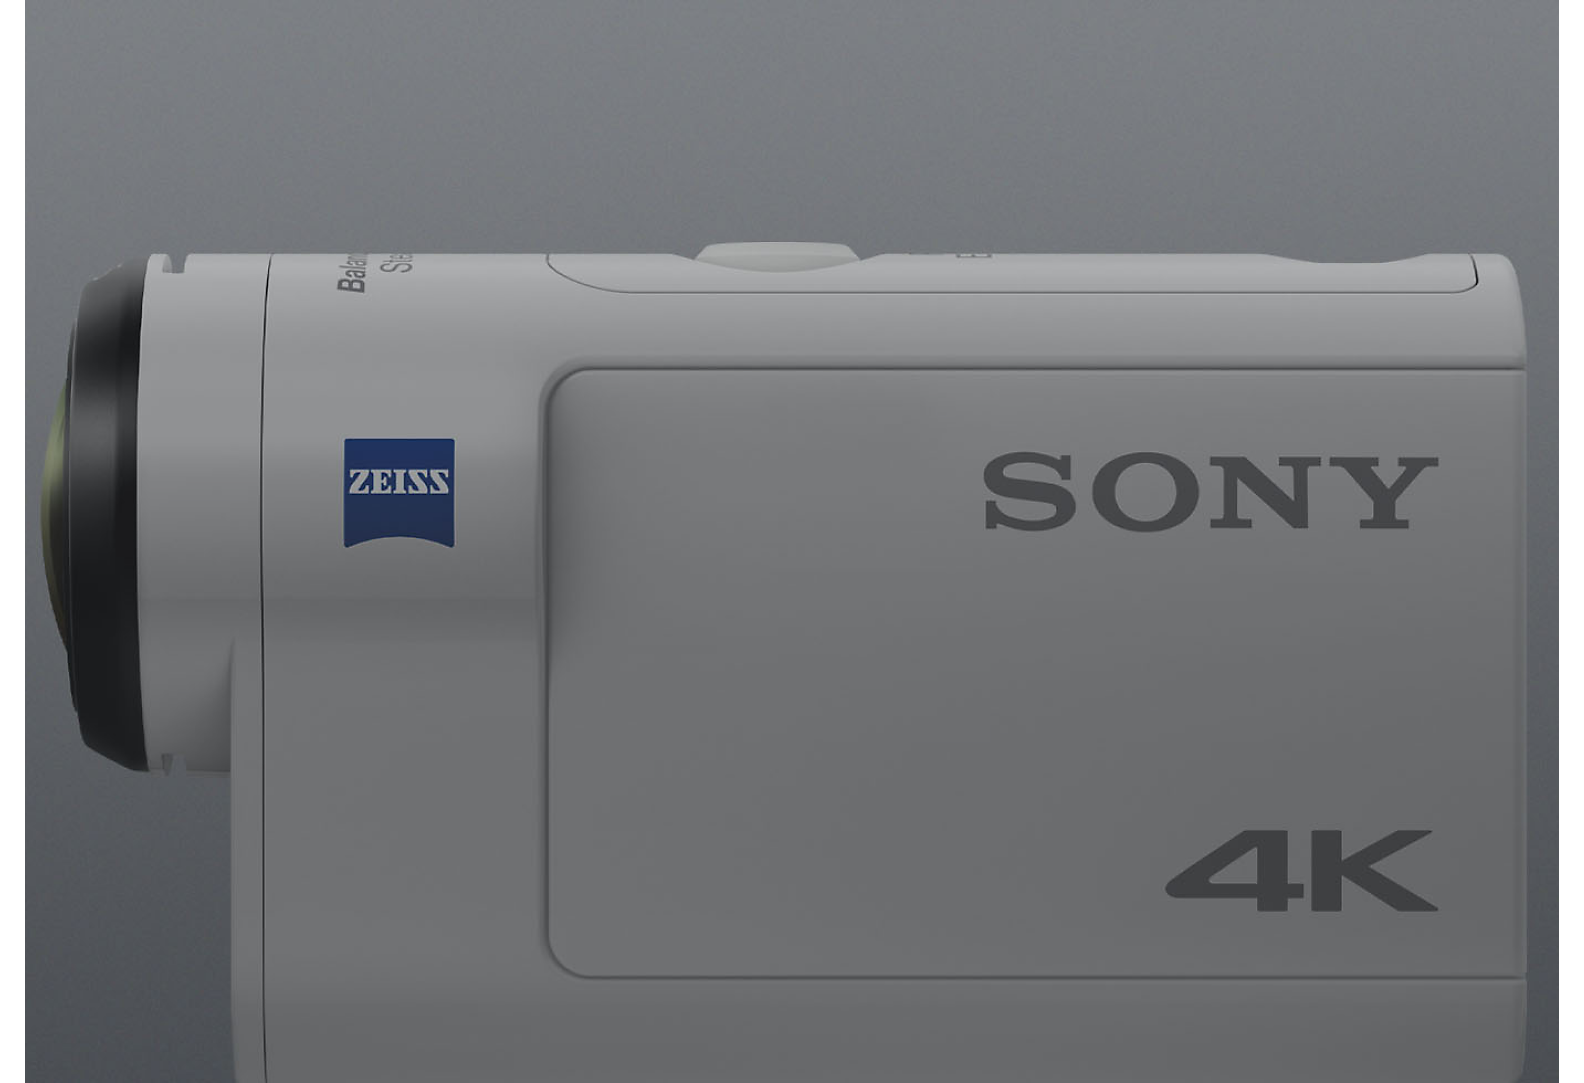 Widok z boku kamery Sony Action Cam 4K w kolorze białym